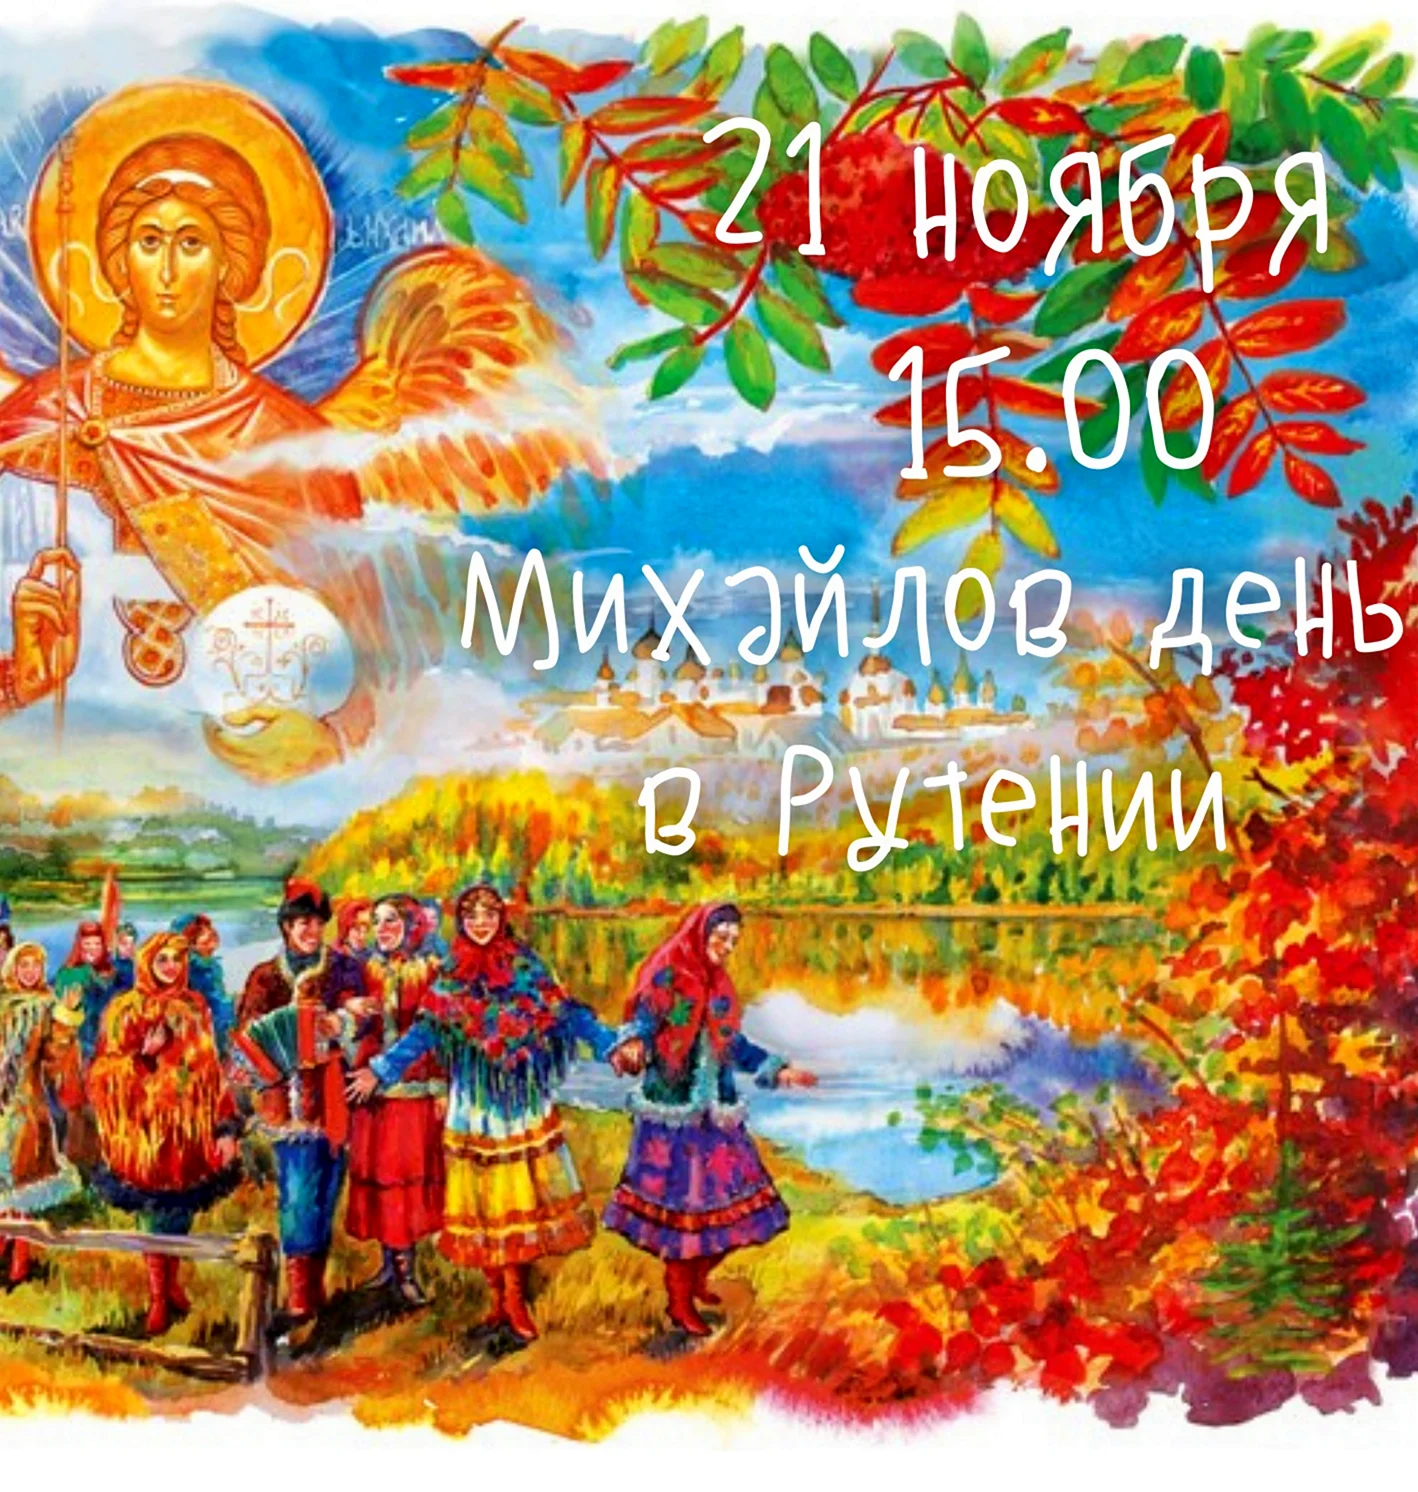 Народный праздник Михайлов день